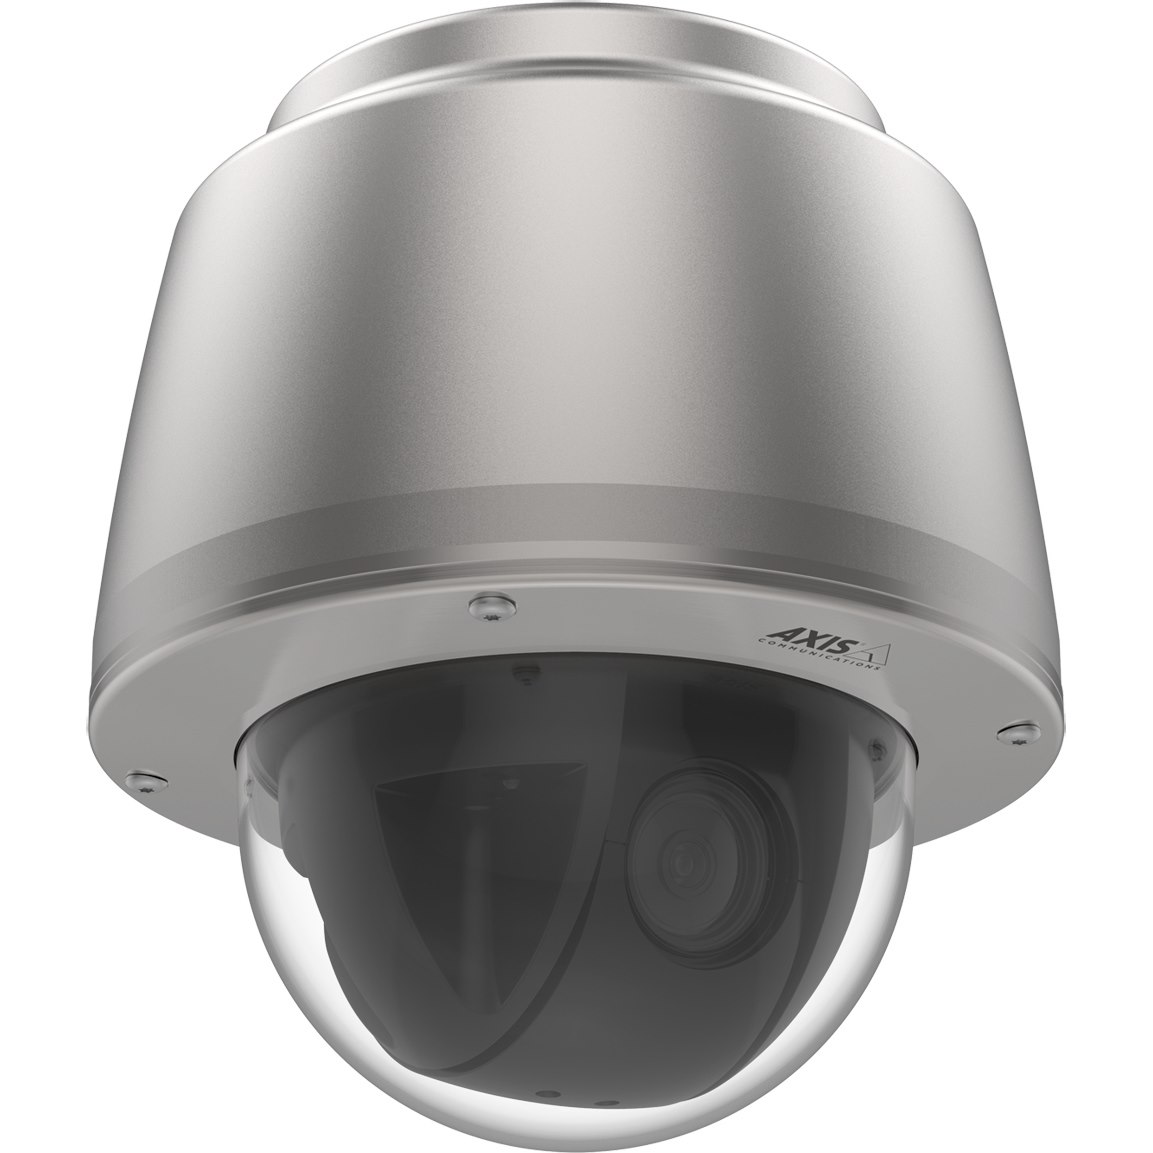 AXIS Q6075-SE HD Network Camera - Dome